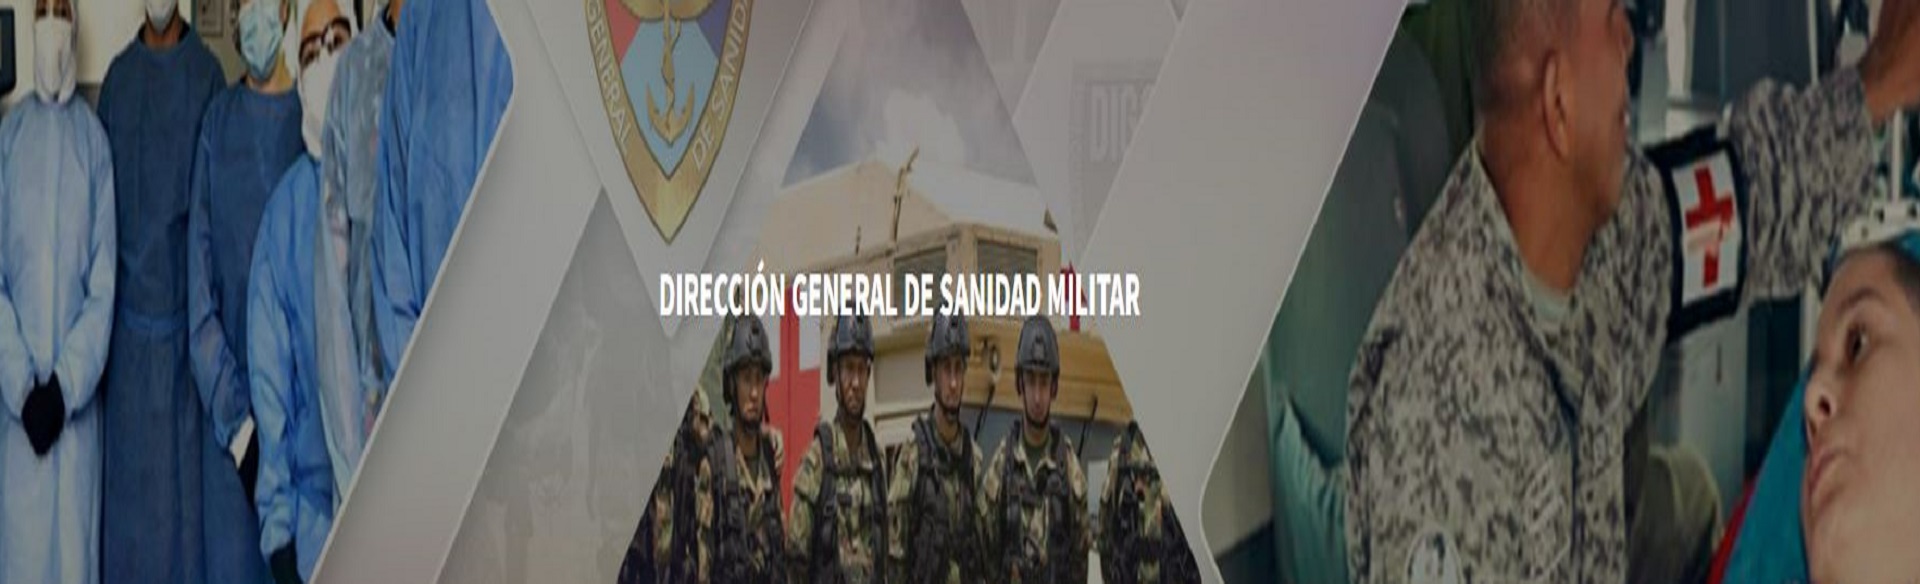 Dirección General de Sanidad Militar 